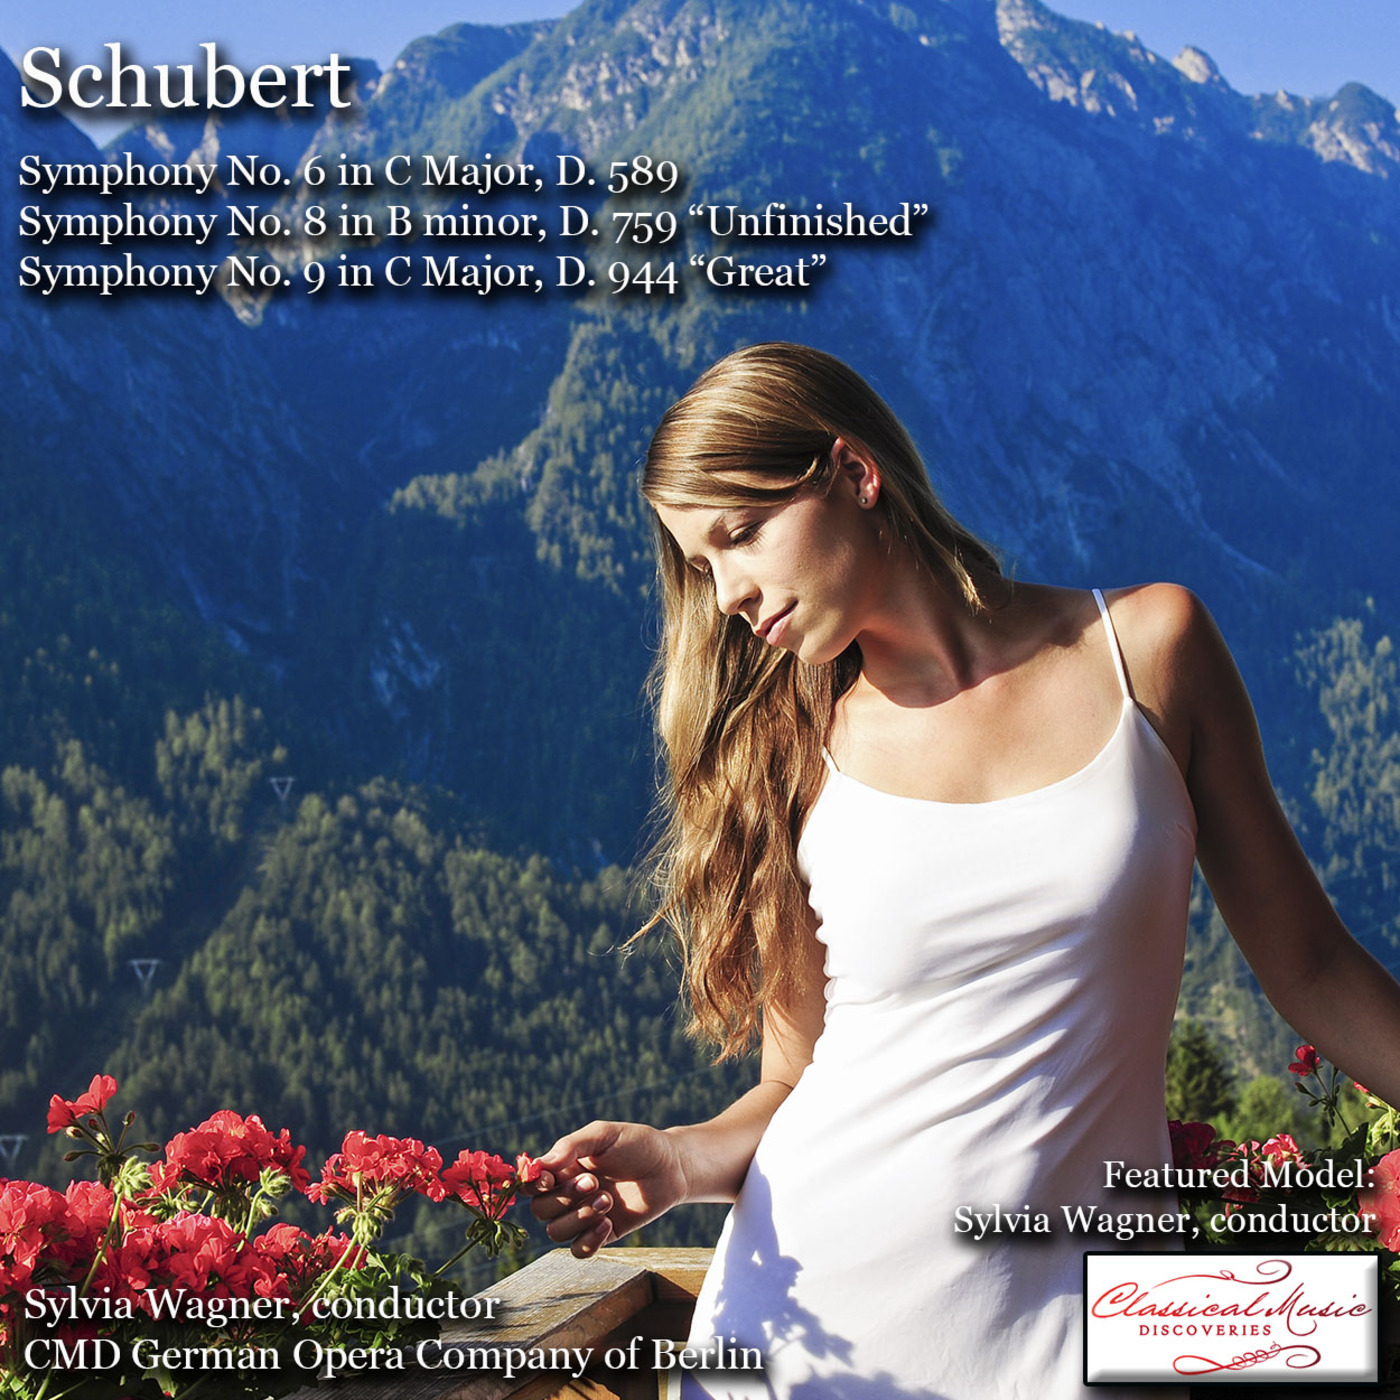 Episode 133: 17133 Schubert: Symphonies 6, 8, 9